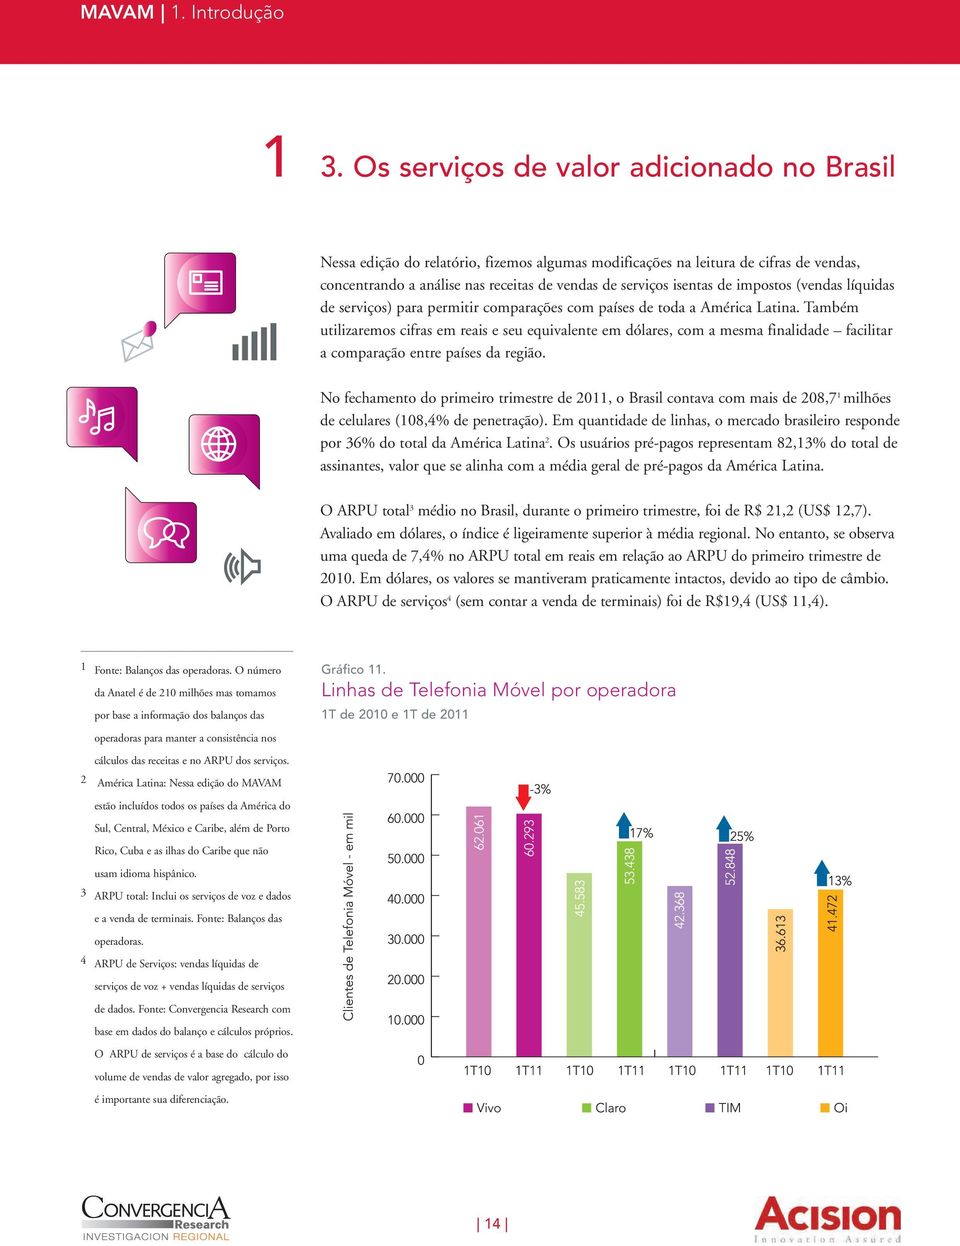 impostos (vendas líquidas de serviços) para permitir comparações com países de toda a América Latina.